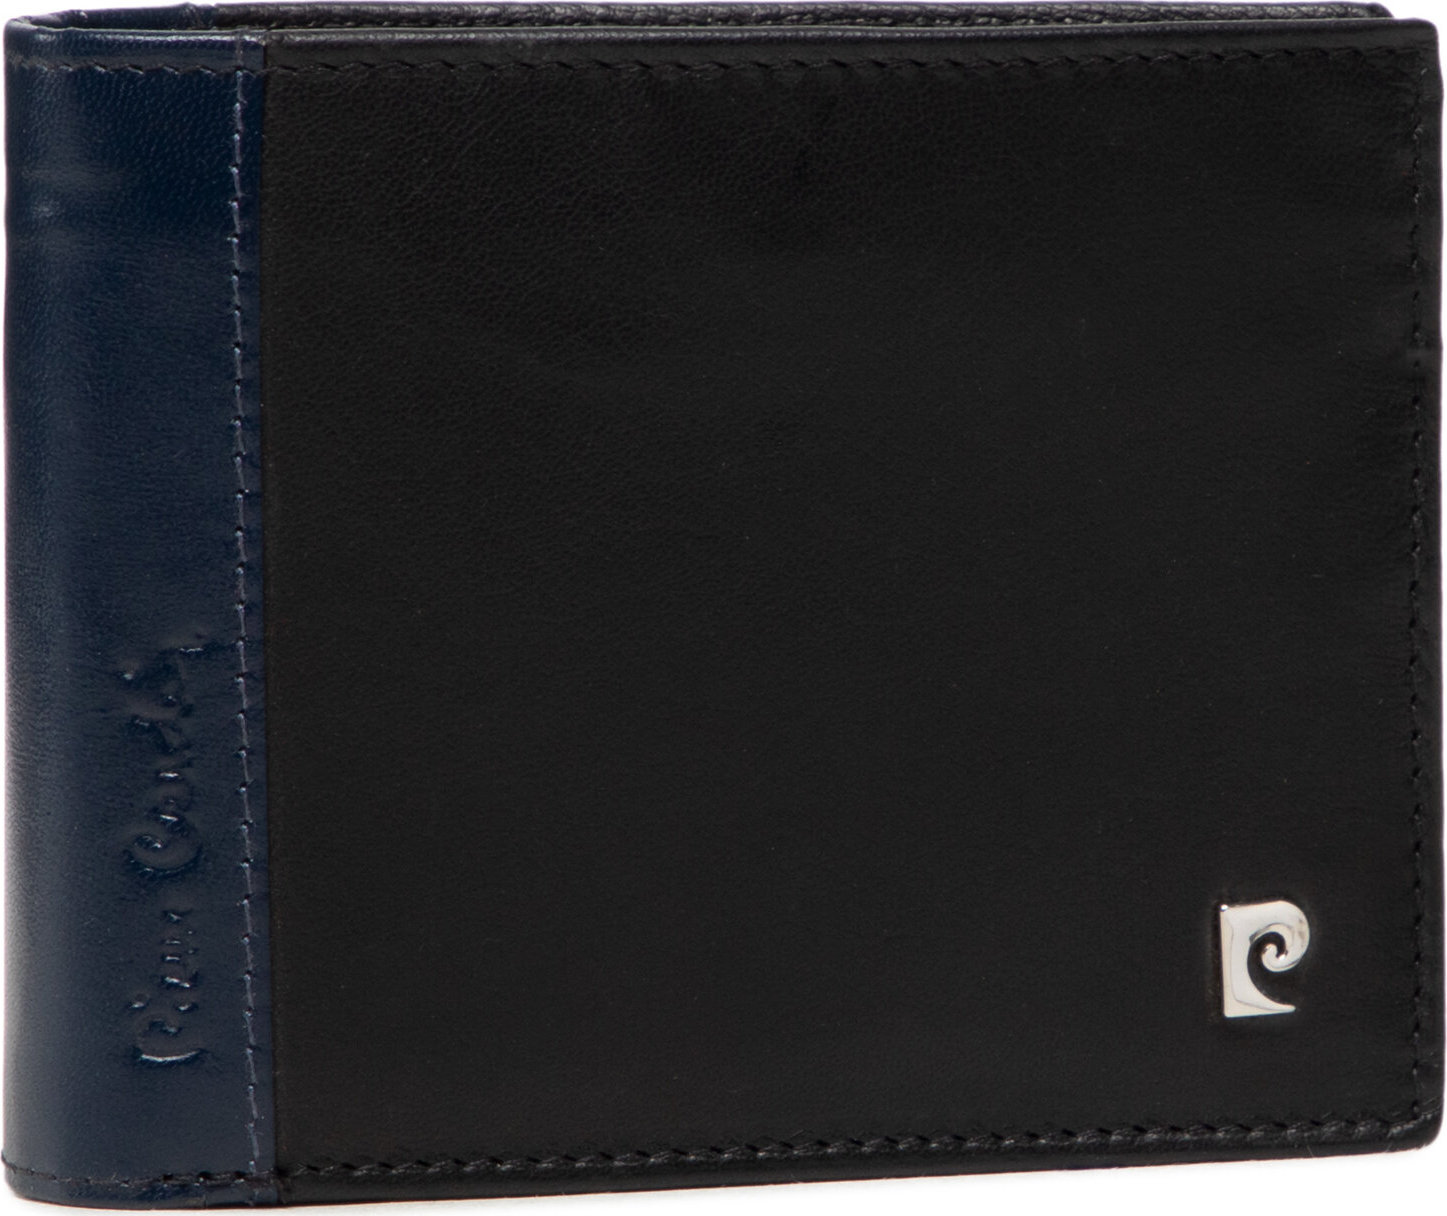 Velká pánská peněženka Pierre Cardin TILAK30 325 Nero/Blu